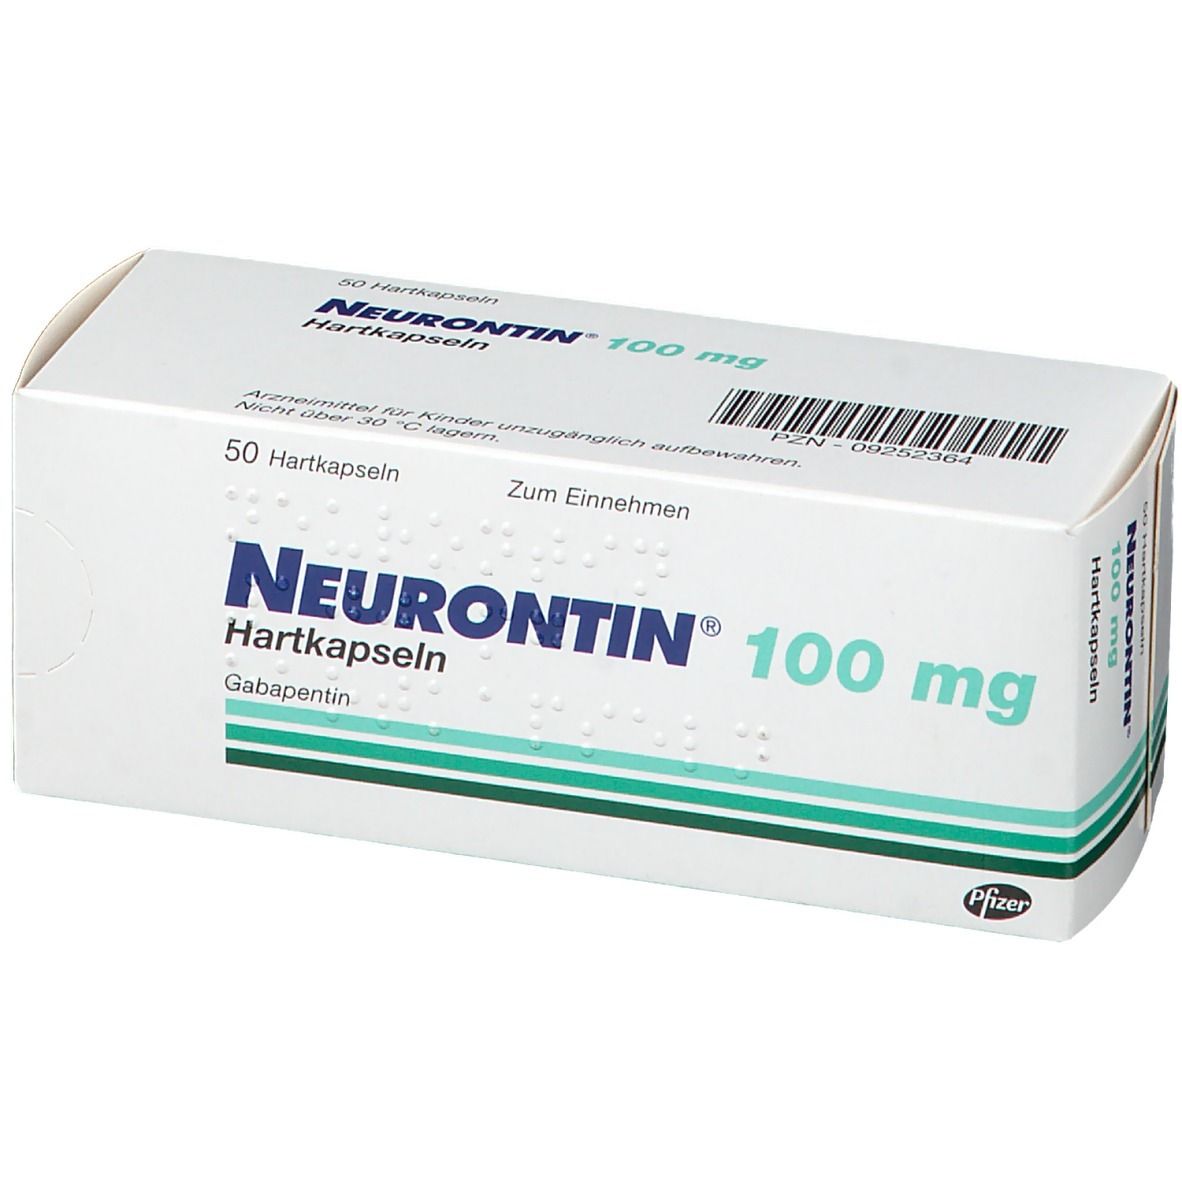 Neurontin® 100 mg